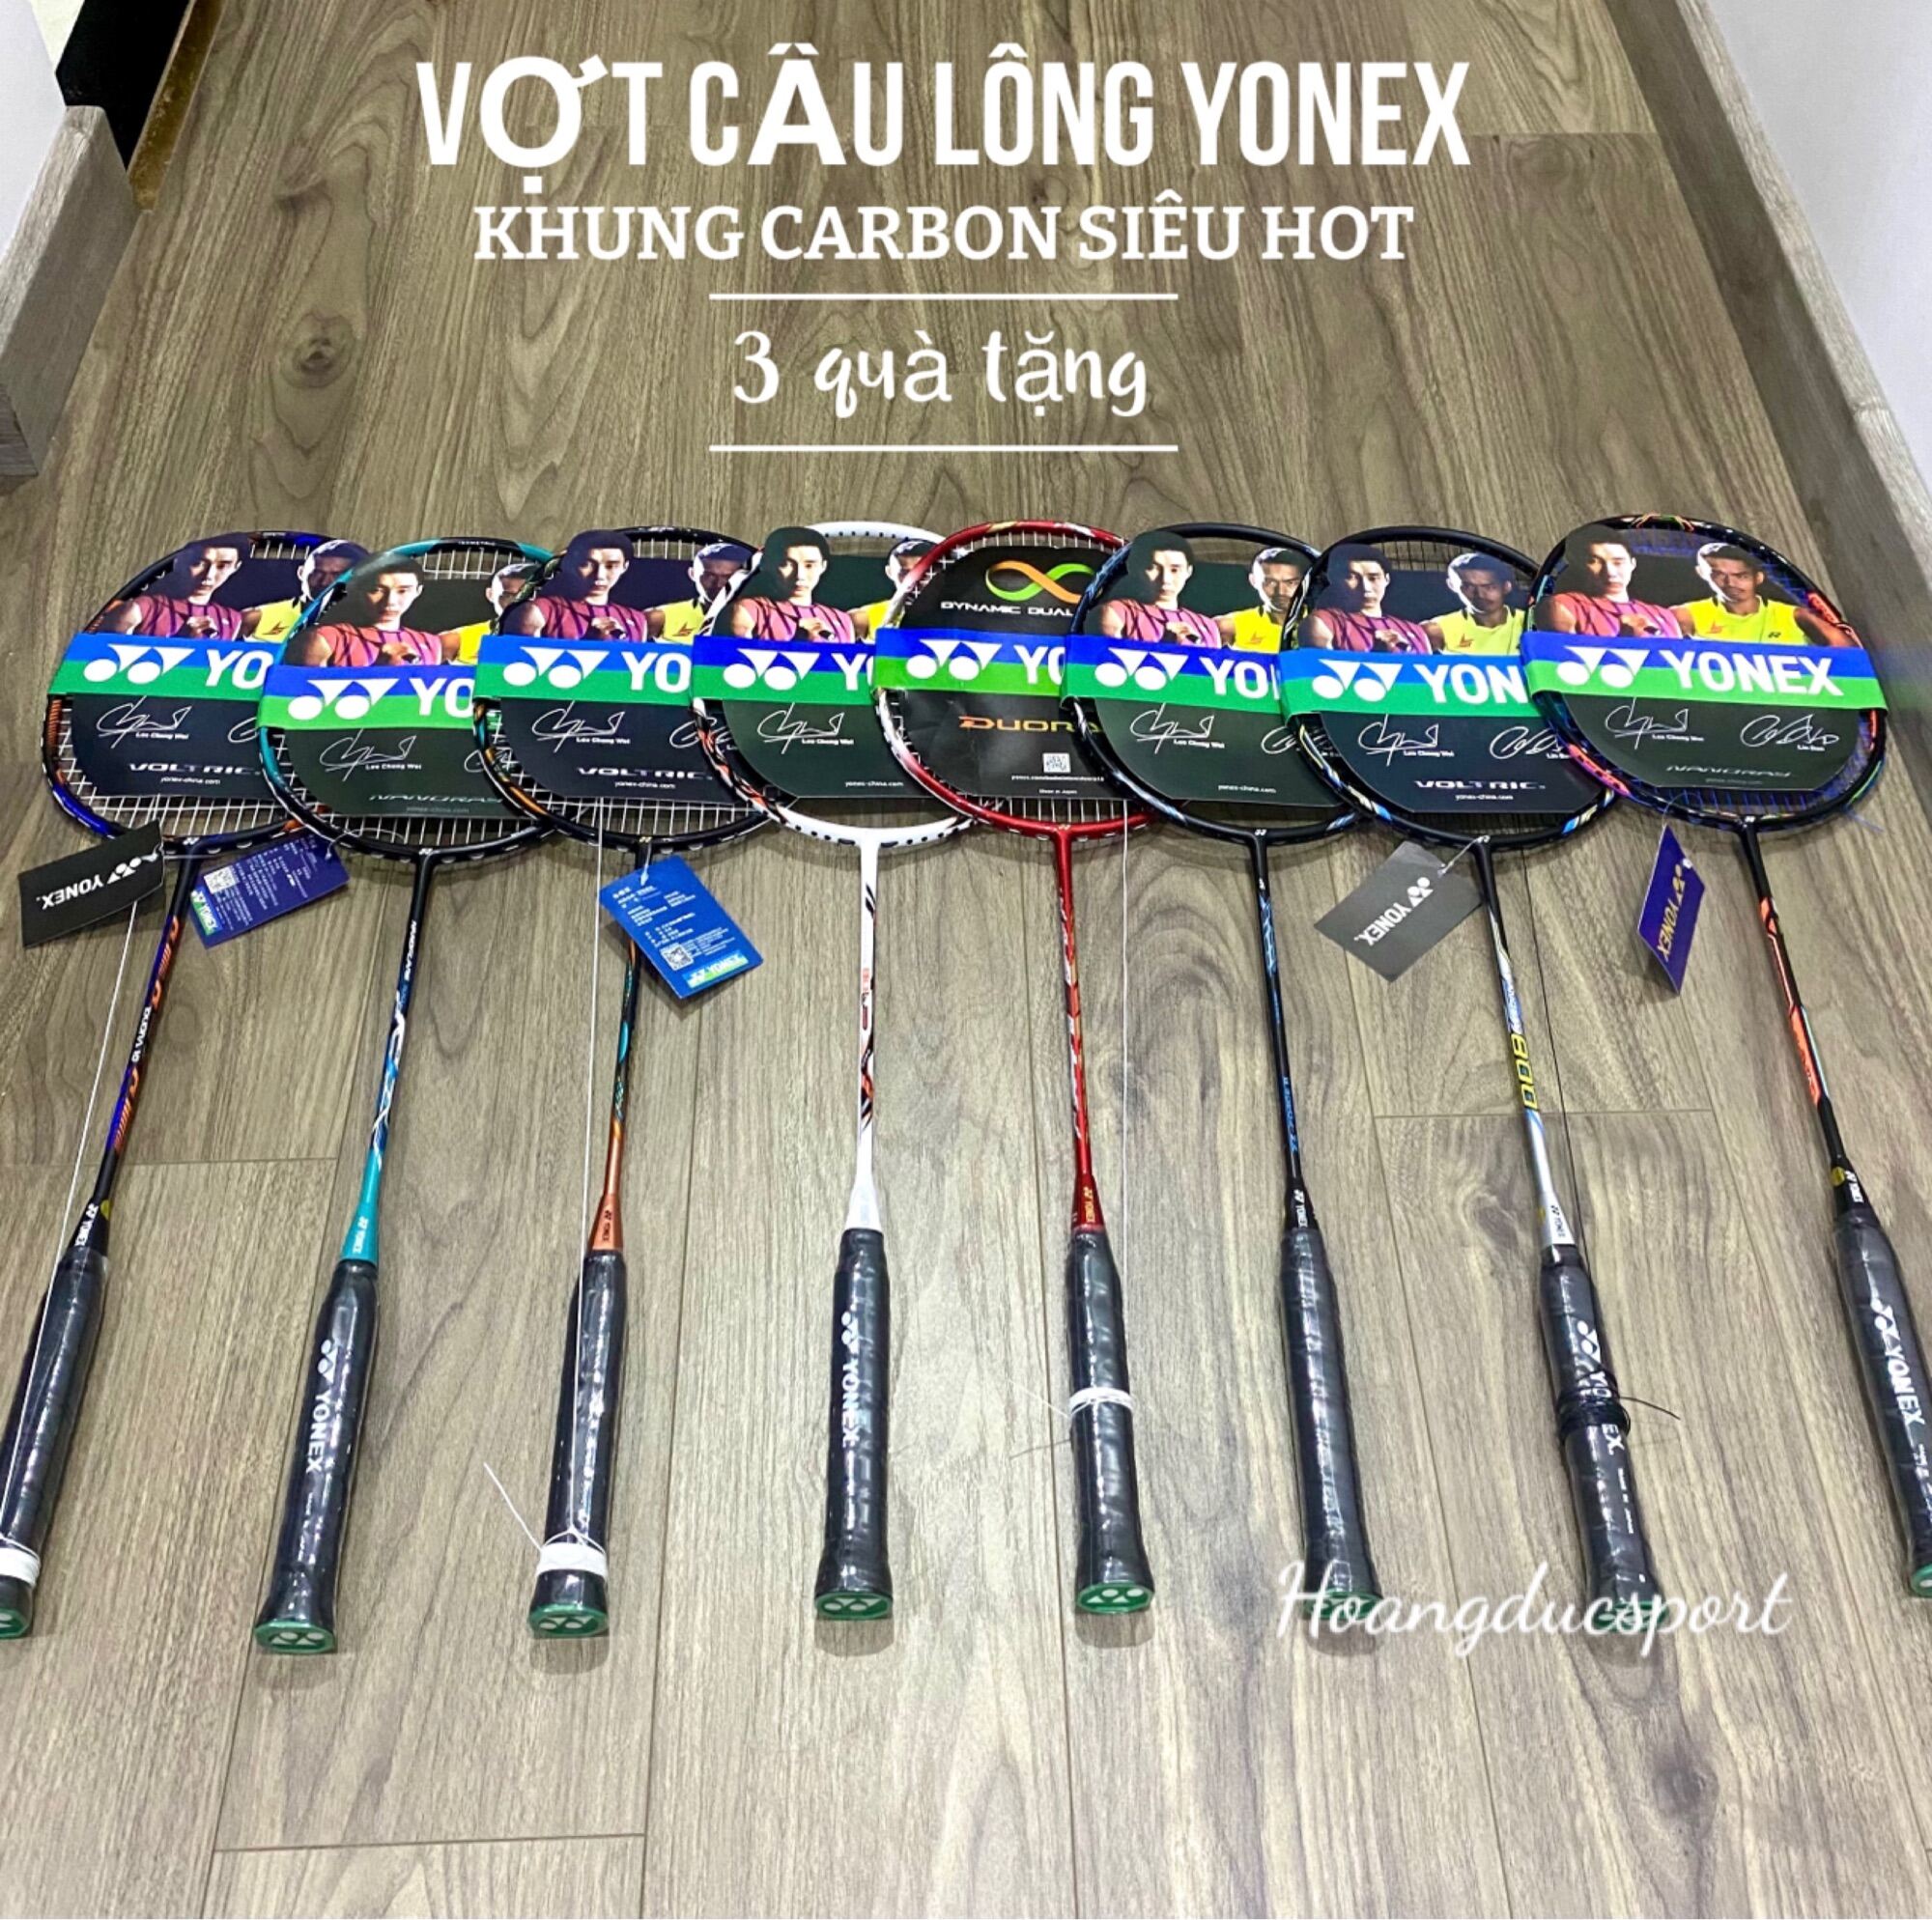 Vợt cầu lông YONEX khung cacbon giá siêu hót (khuyến mãi căng dây và cuốn cán)